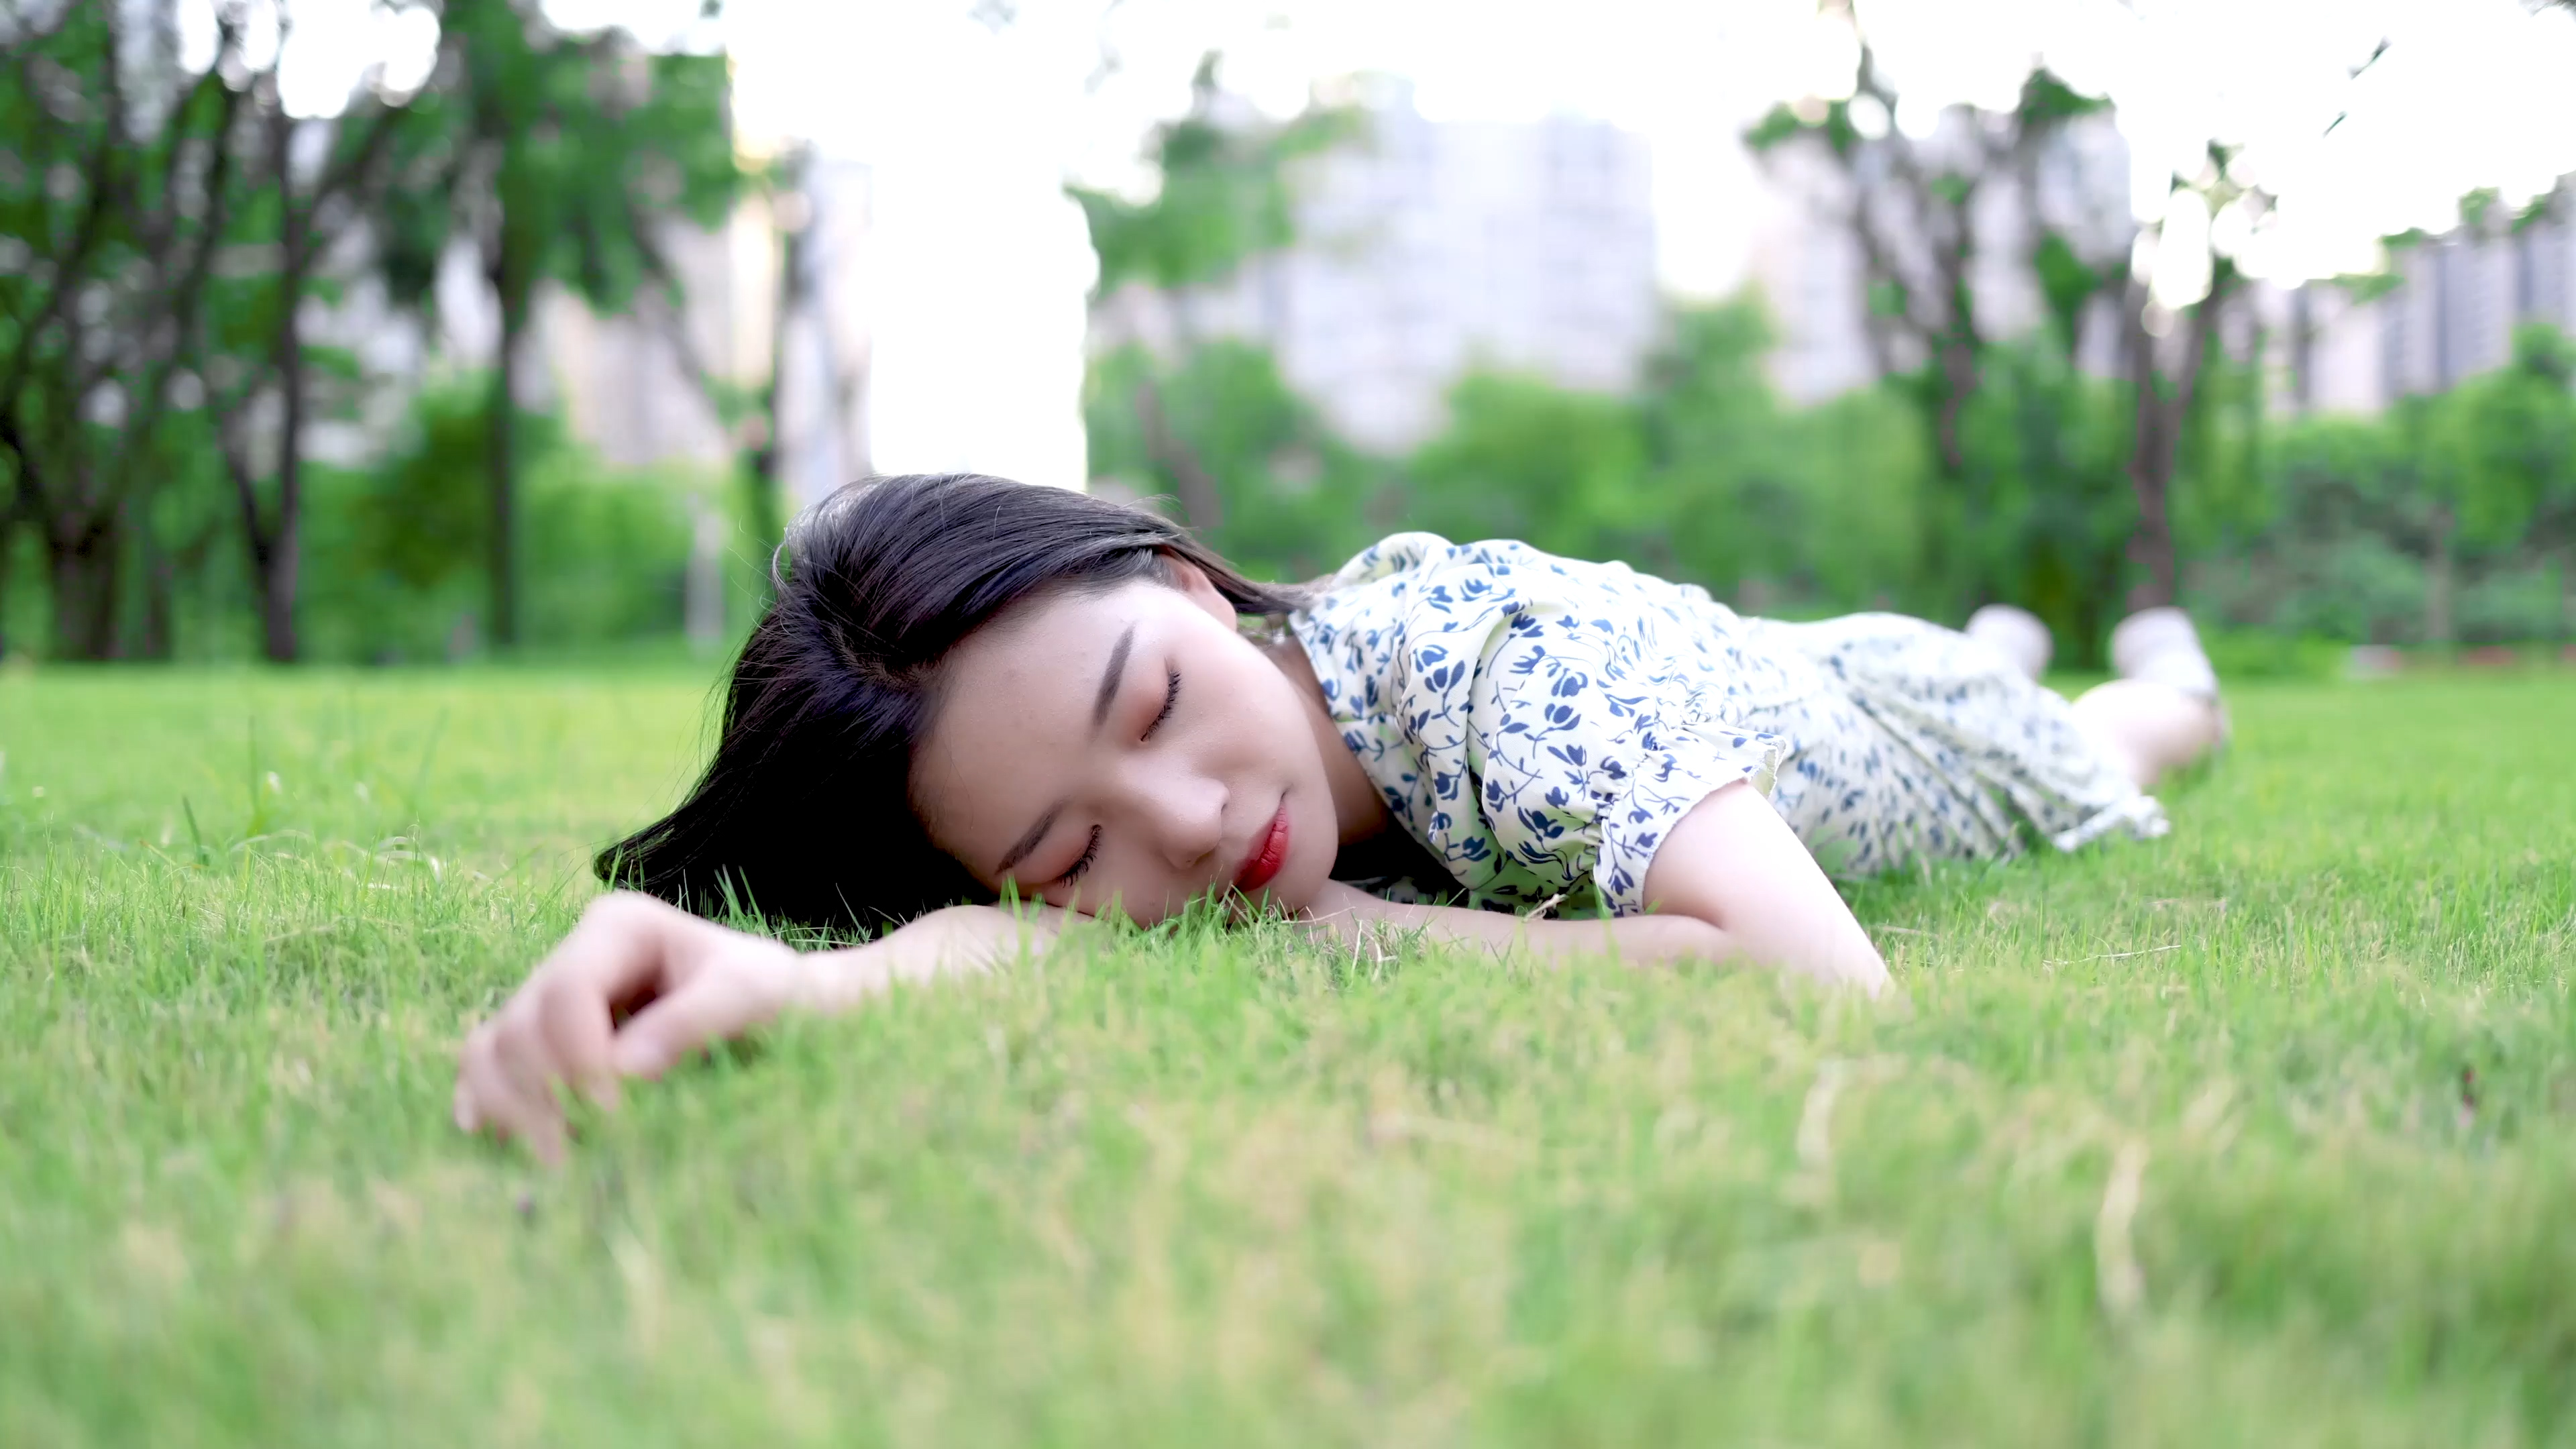 躺在草地上的长发美女 - 免费可商用图片 - cc0.cn